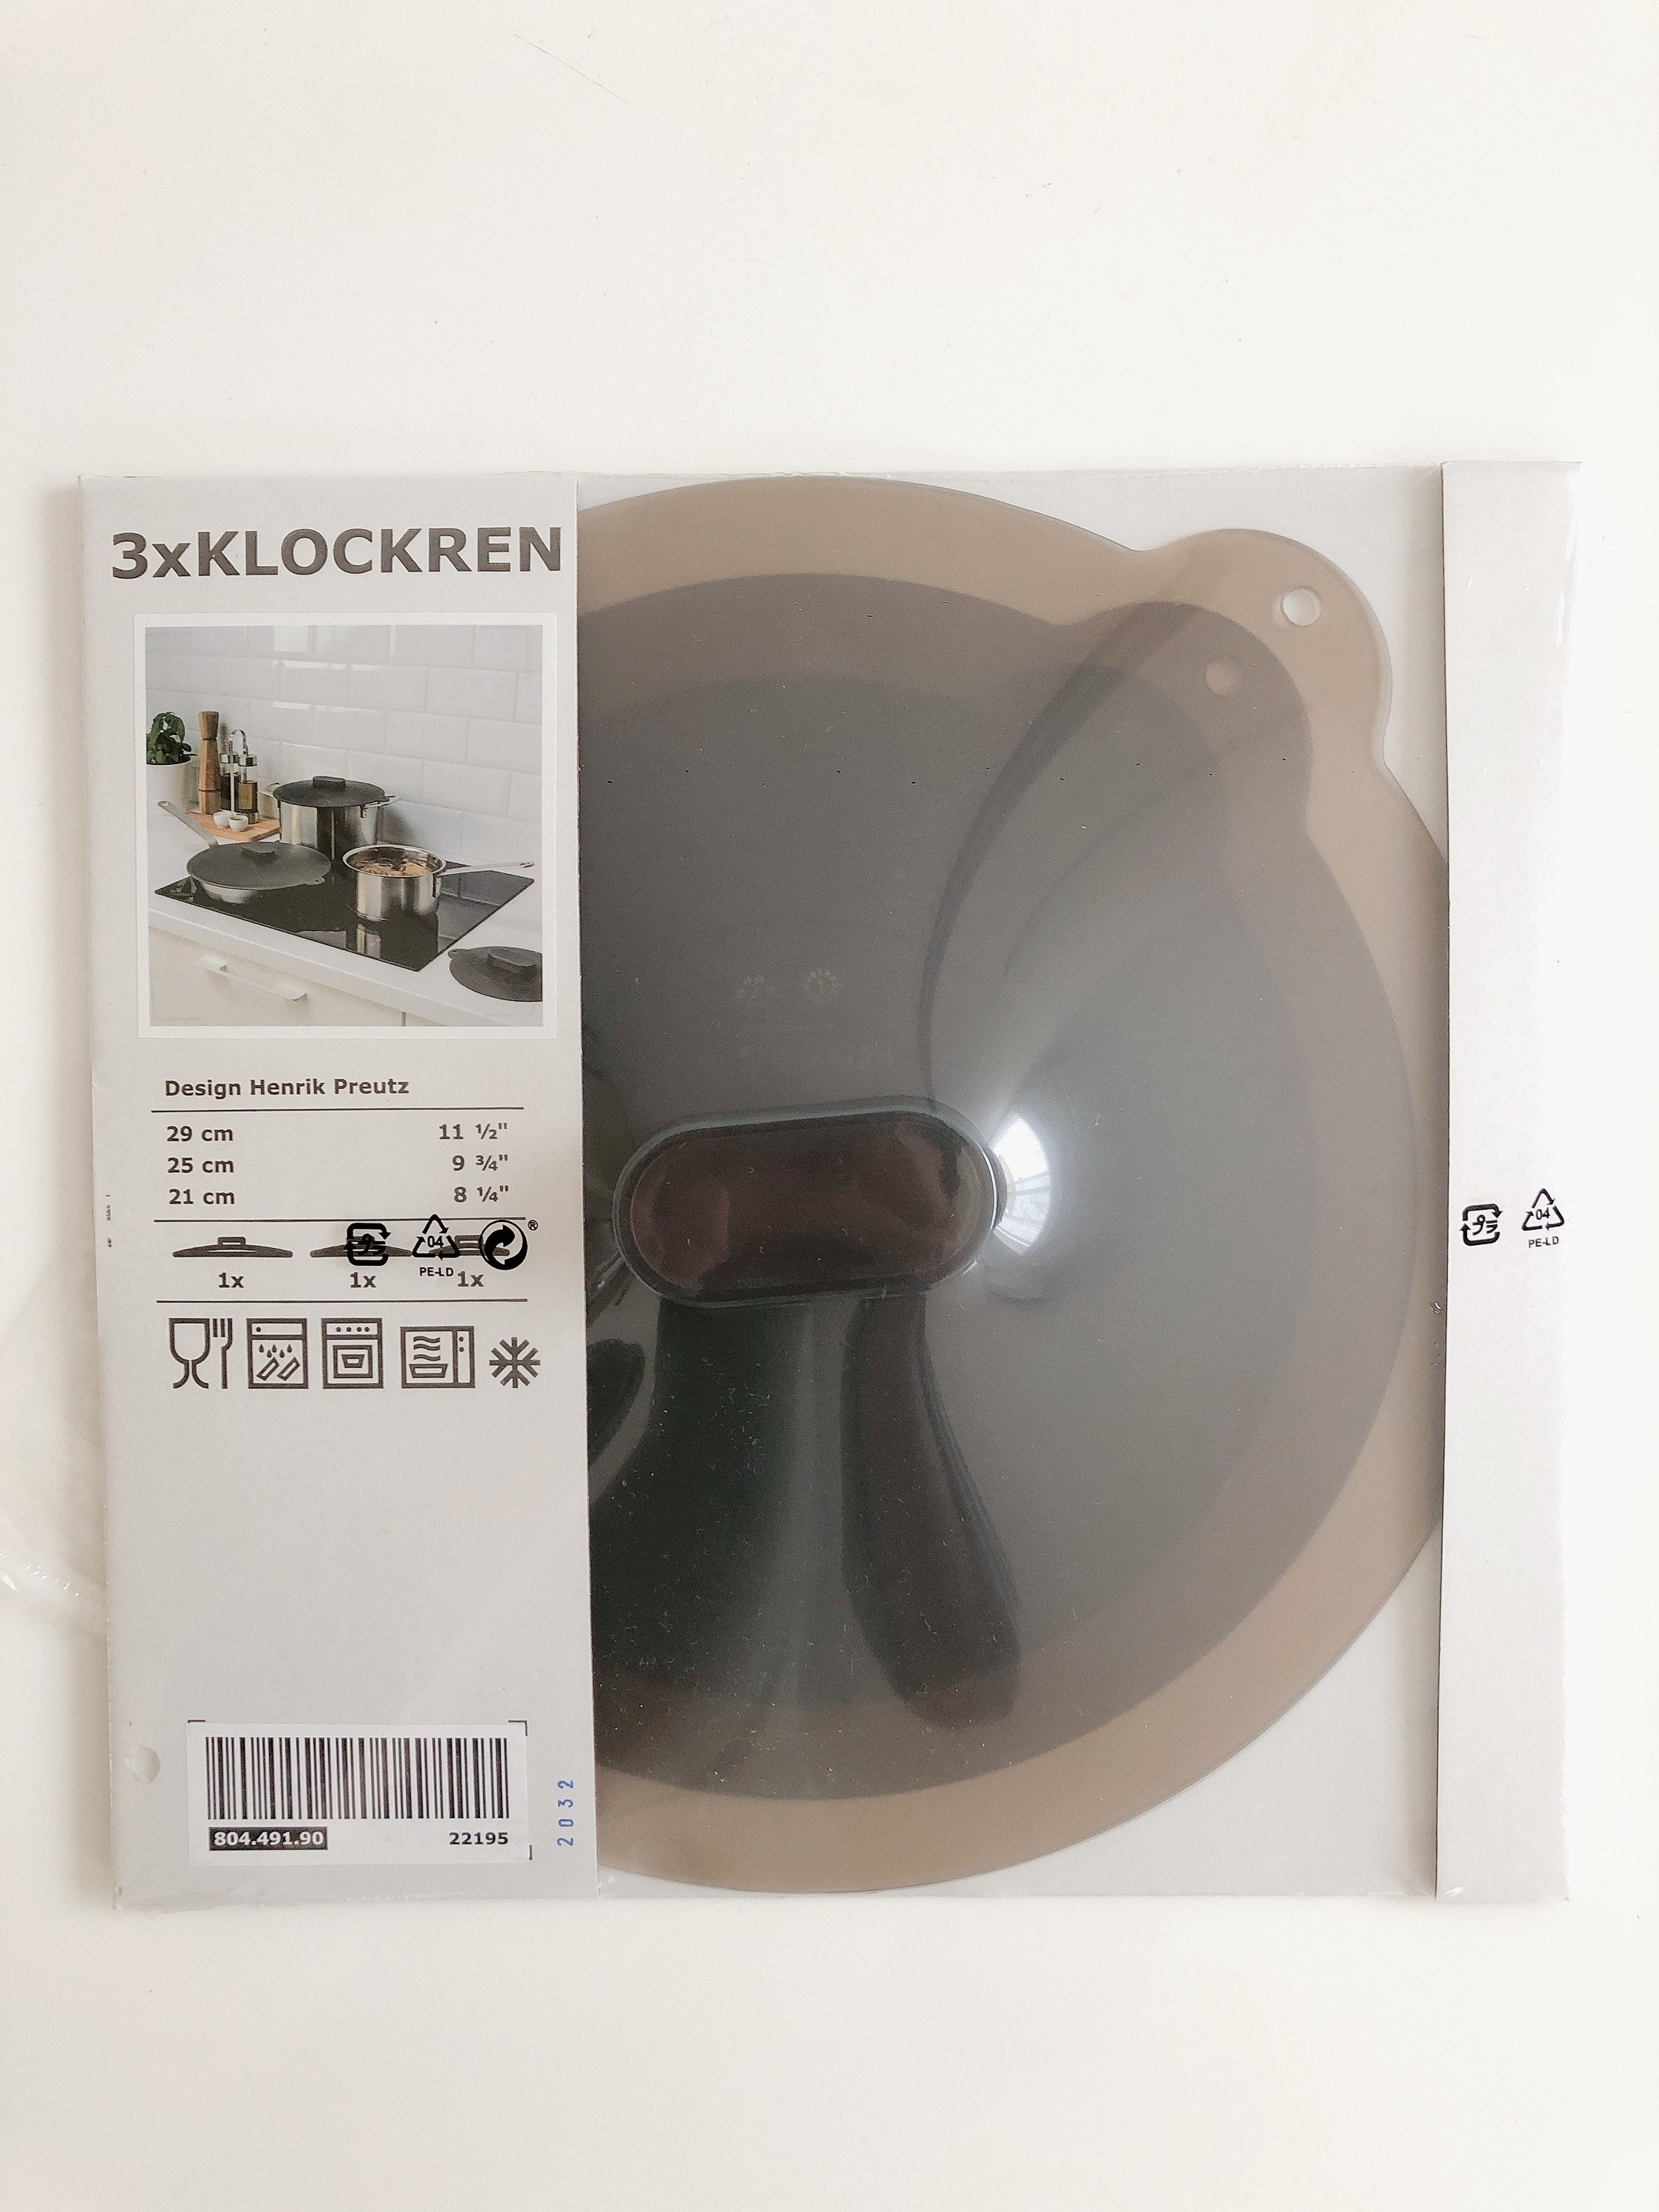 IKEA（イケア）のキッチンアイテム「KLOCKREN クロックレンユニバーサルふた3点セット」